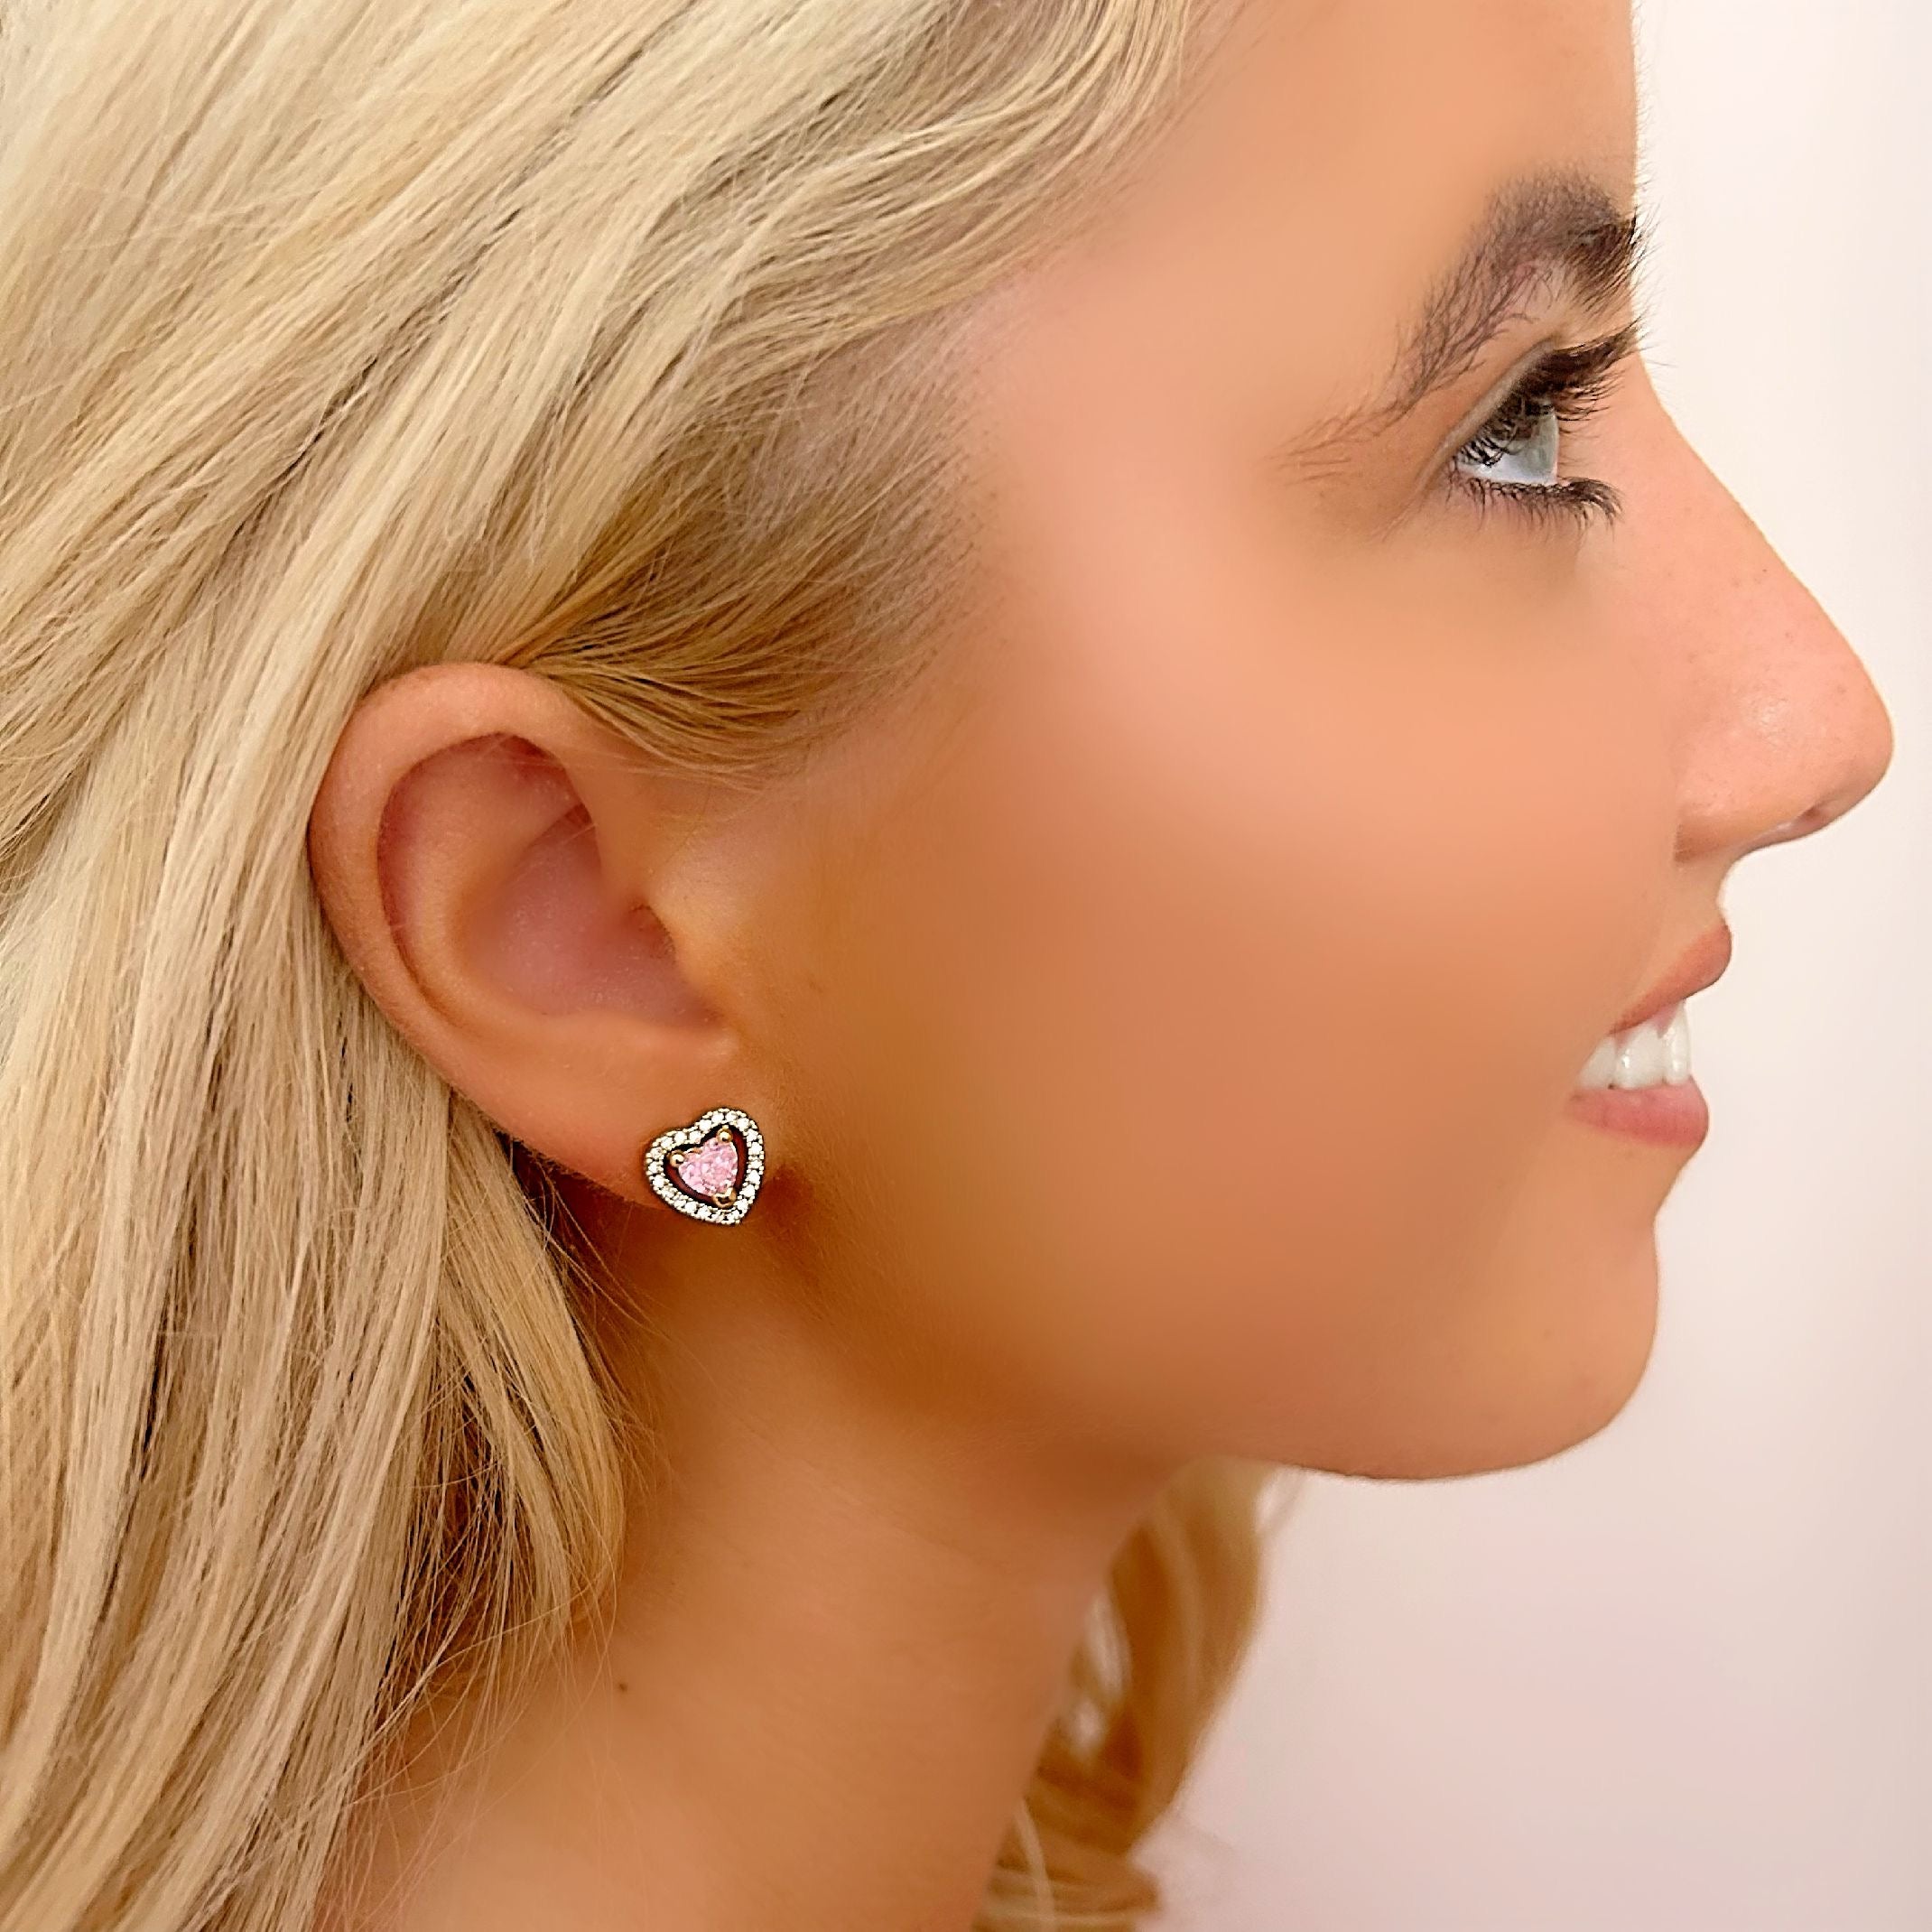 Pink heart stud earrings 